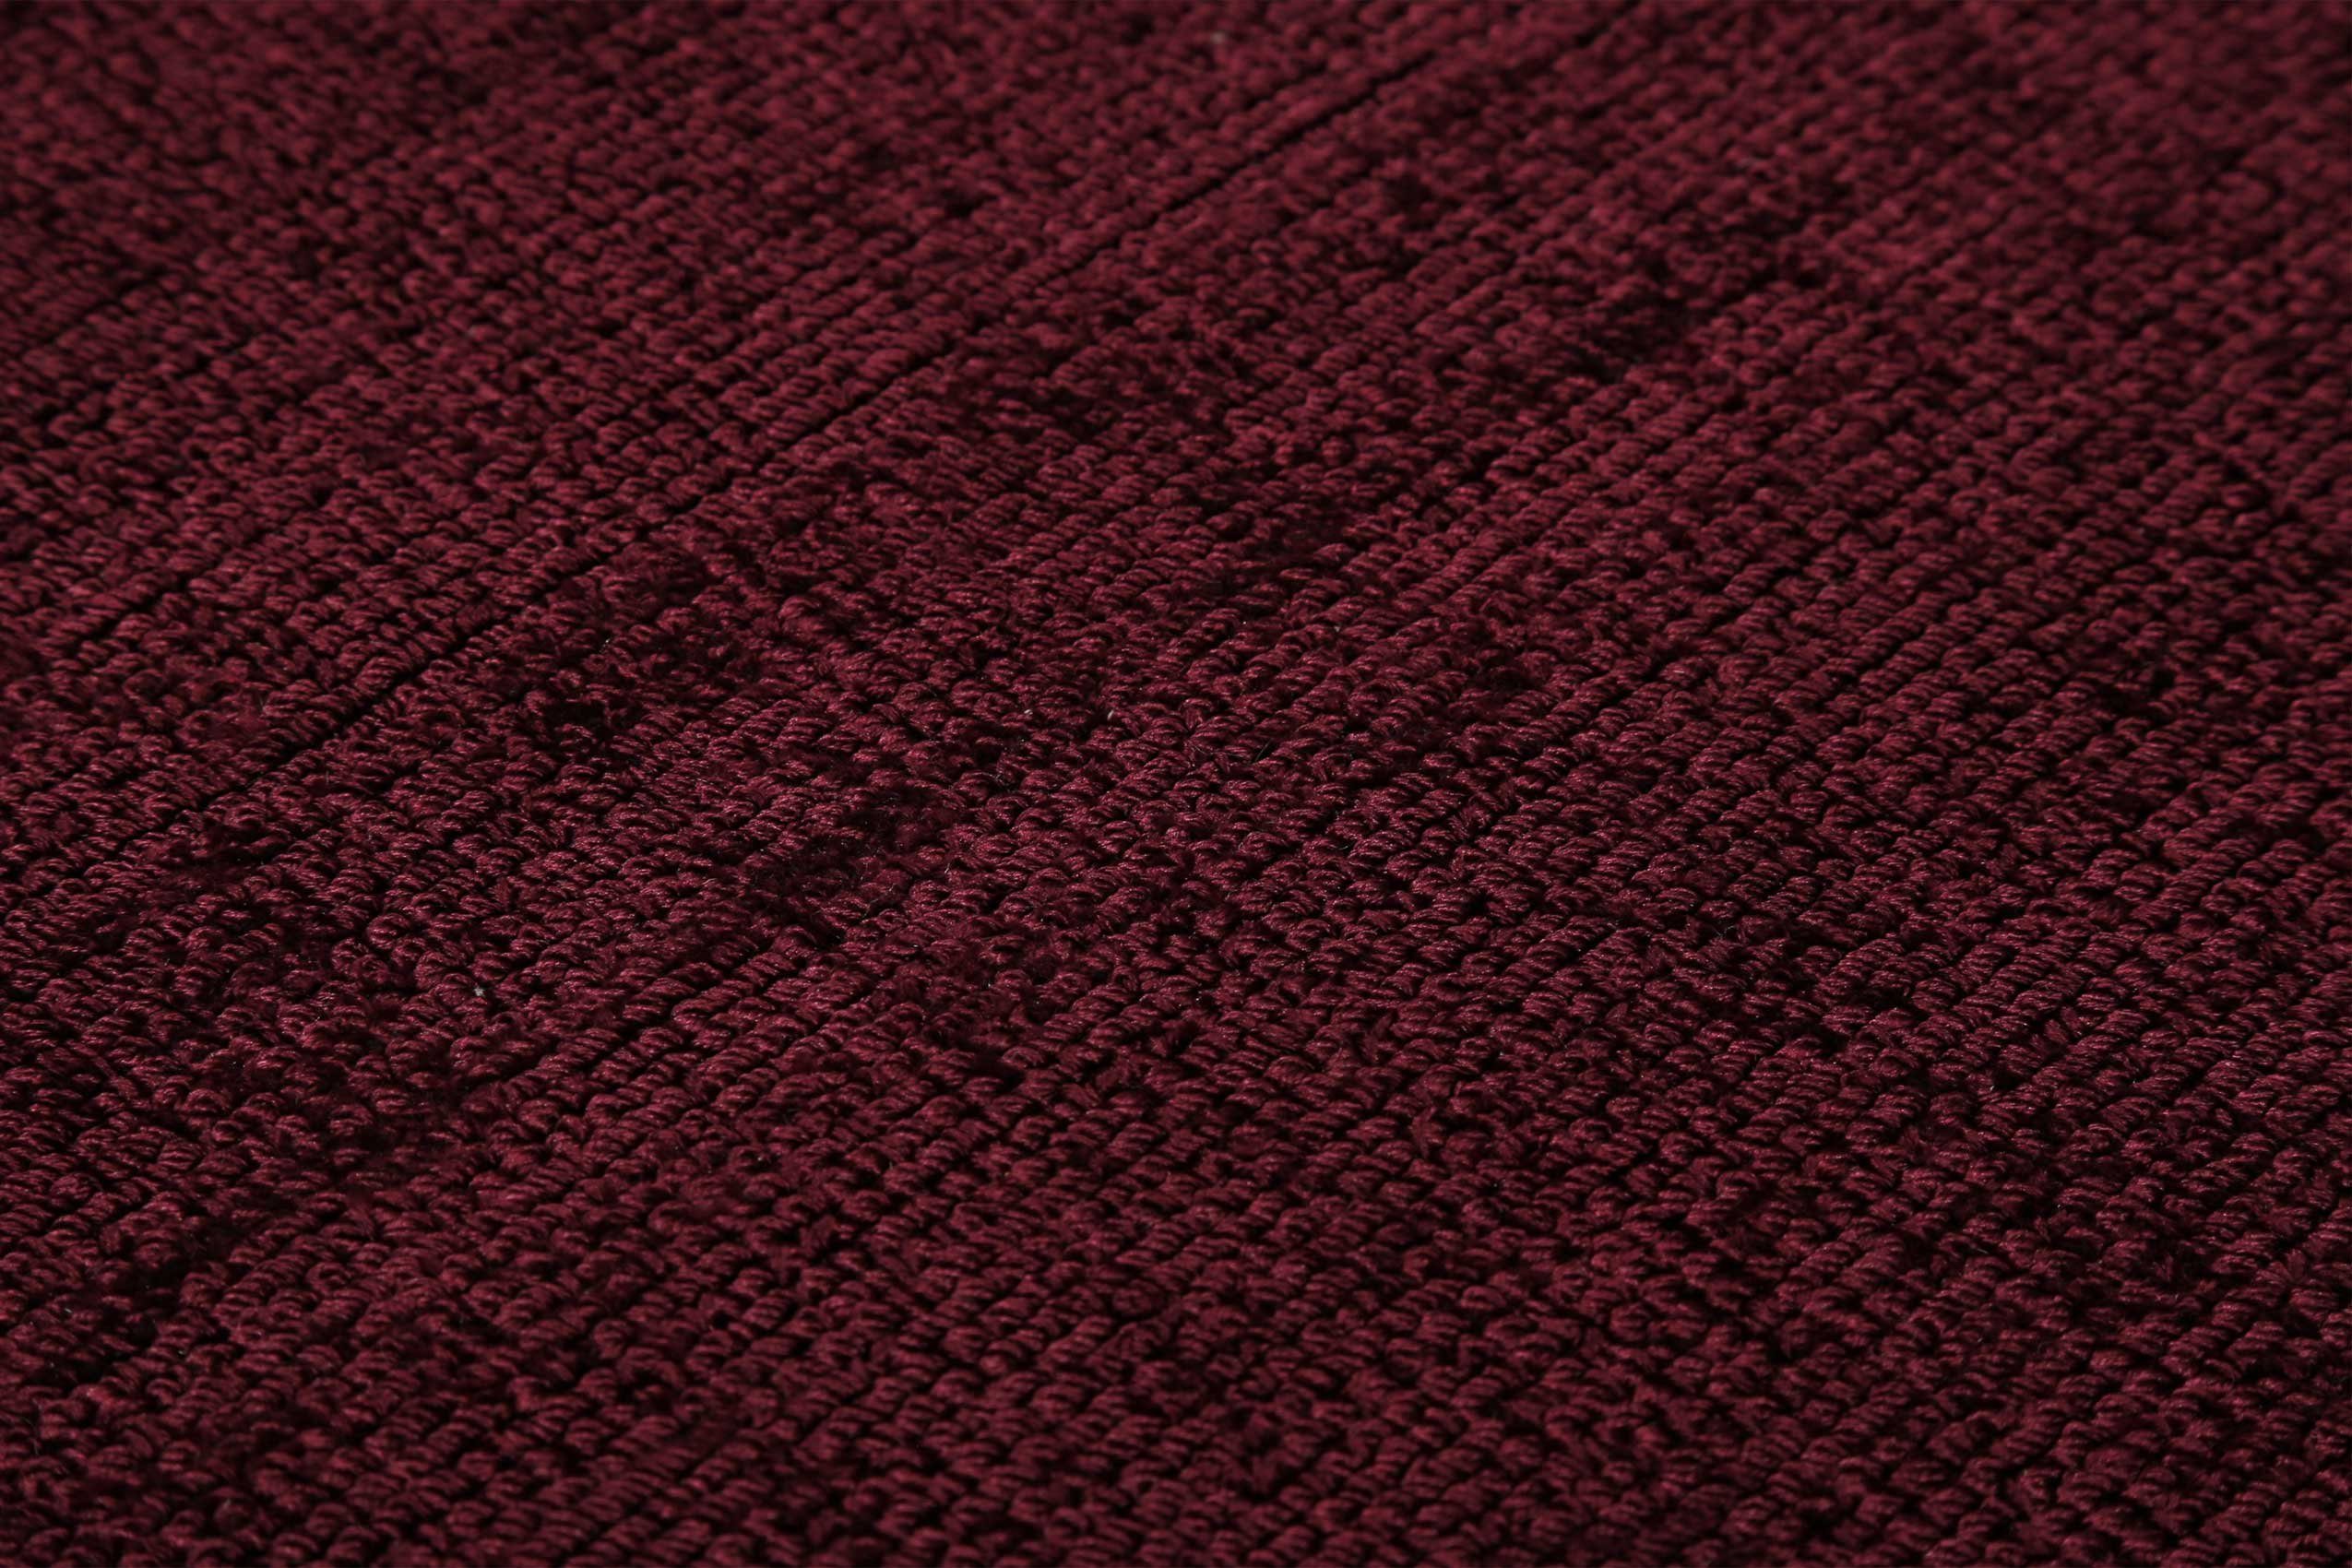 Teppich Gil, handgewebt, rund, glänzend, Esprit, Höhe: rot schimmernde 8 seidig bordeaux mm, Farbbrillianz, Melangeeffekt